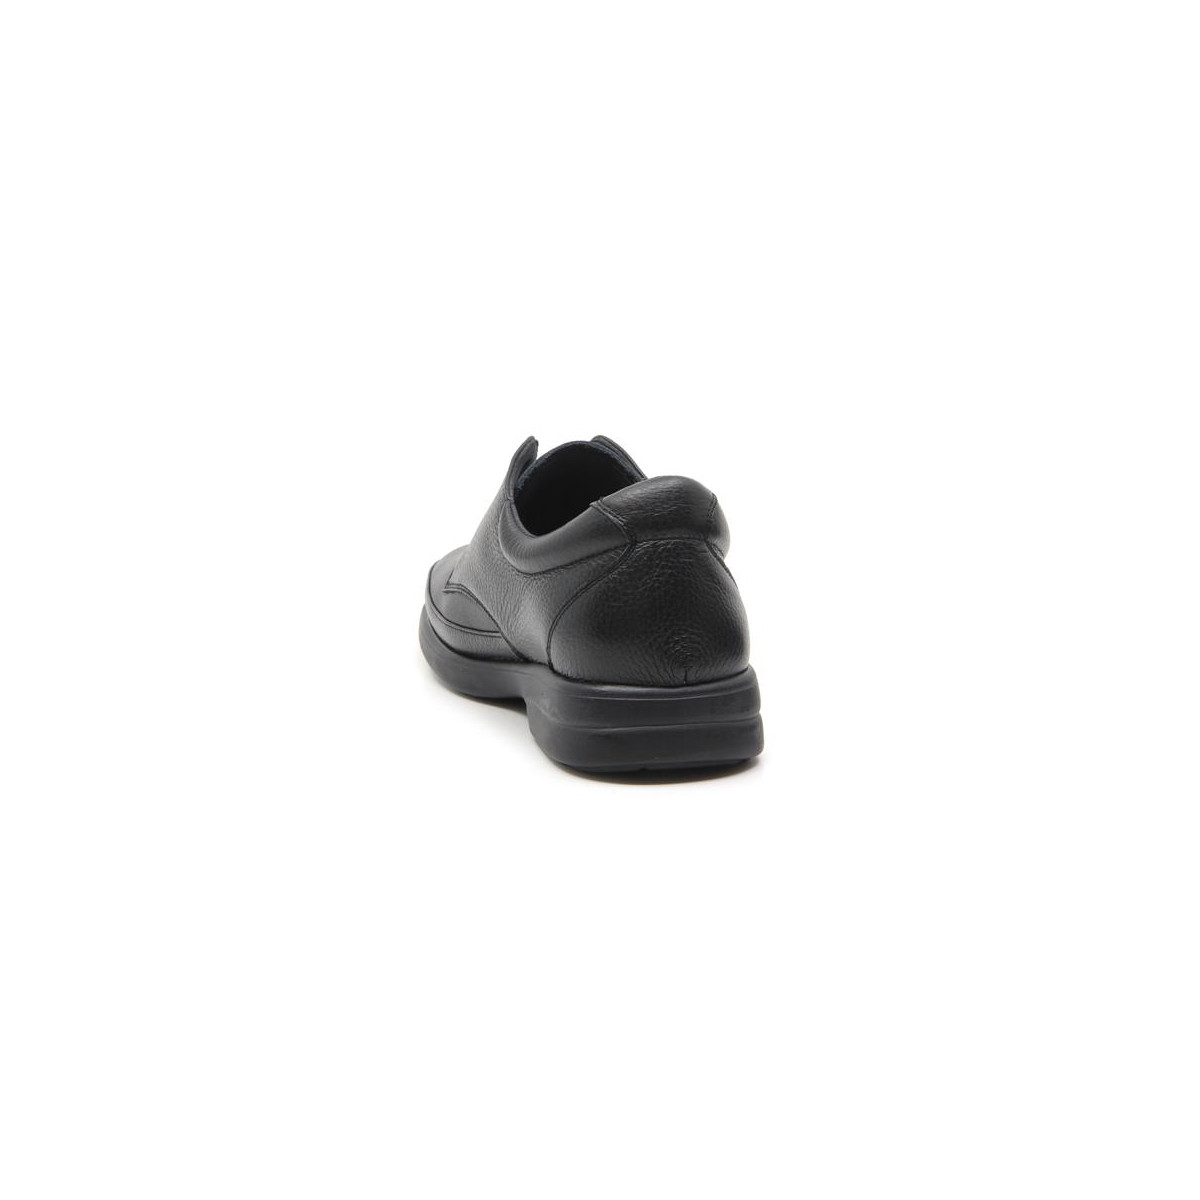 Chaussures confort à lacets en cuir - Noir - Mabel Shoes